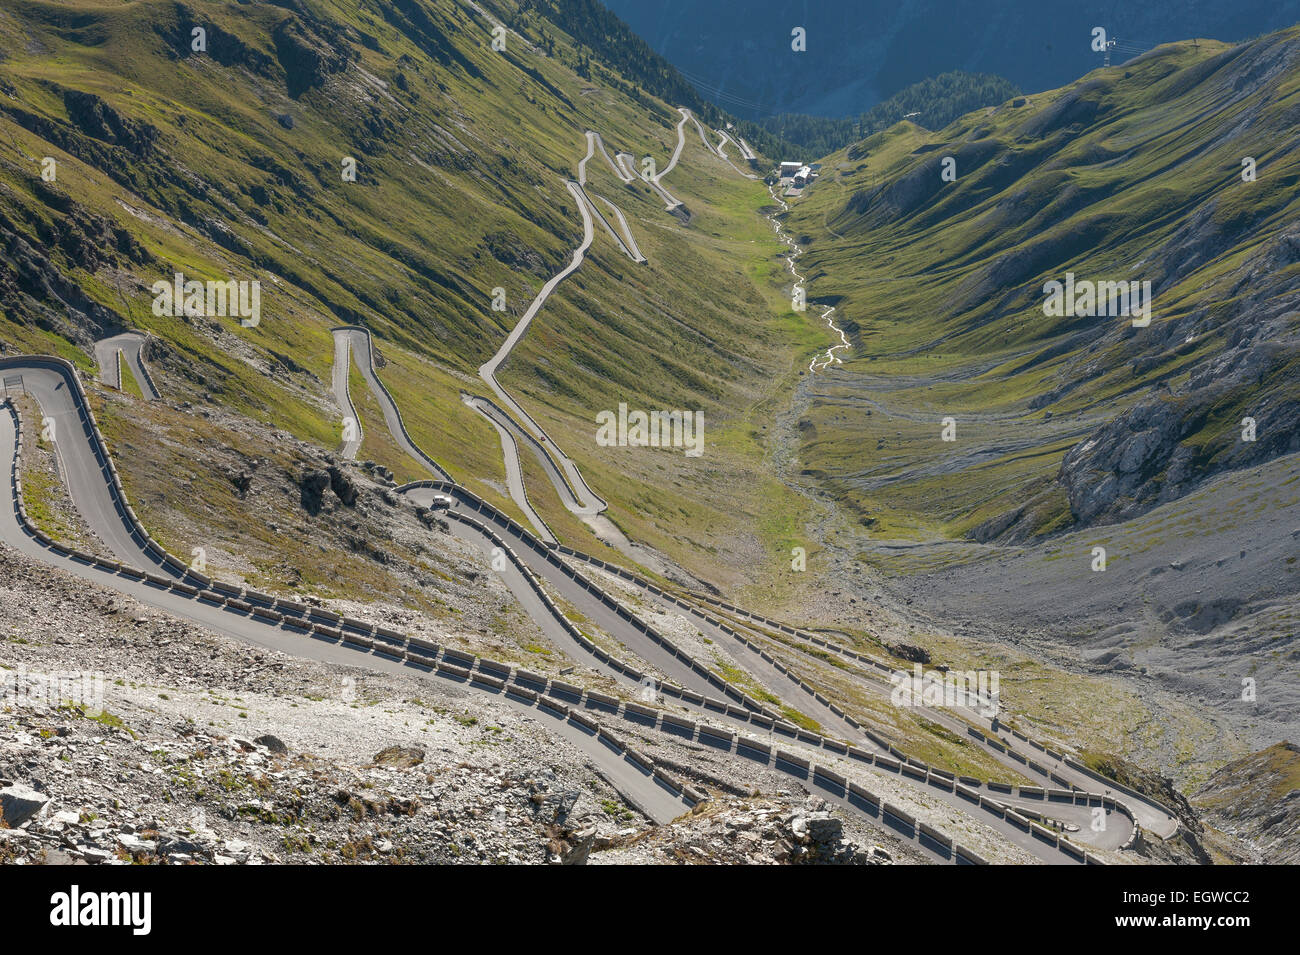 Route de col du Stelvio, route alpine de l'Est, la rampe, le parc national de Stelvio, Stelvio, le Tyrol du Sud, Vénétie, Italie Banque D'Images